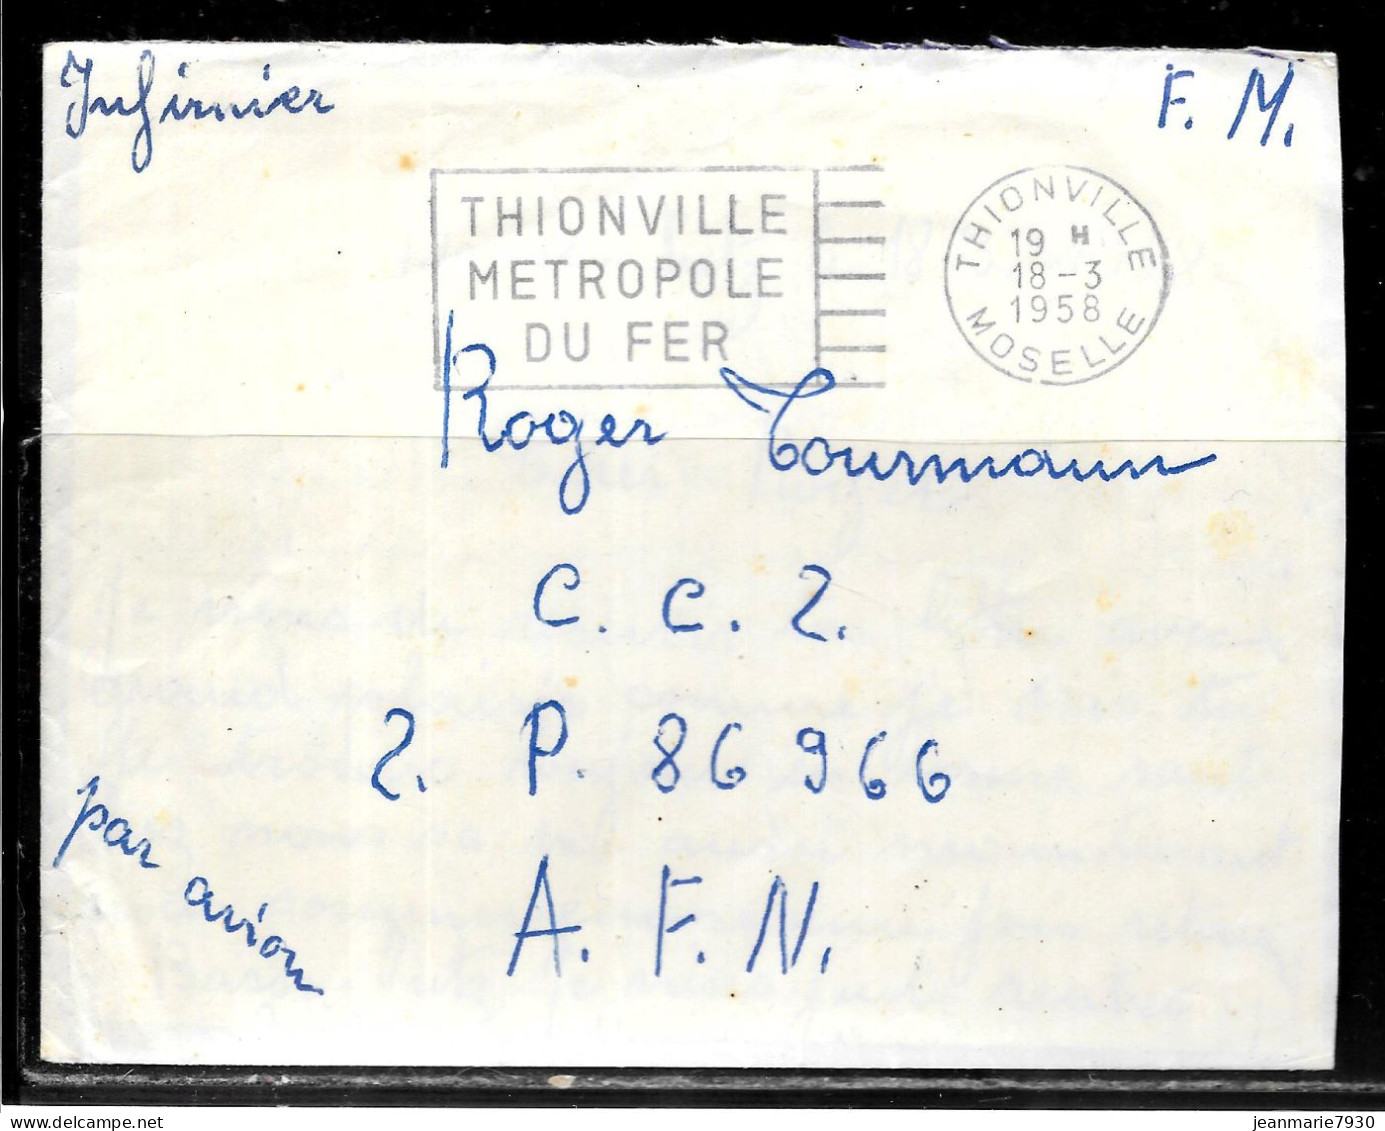 P256 - LETTRE EN FRANCHISE DE THIONVILLE DU 18/03/58 - FLAMME METROPOLE DU FER POUR SP 86966 A.F.N. - Covers & Documents